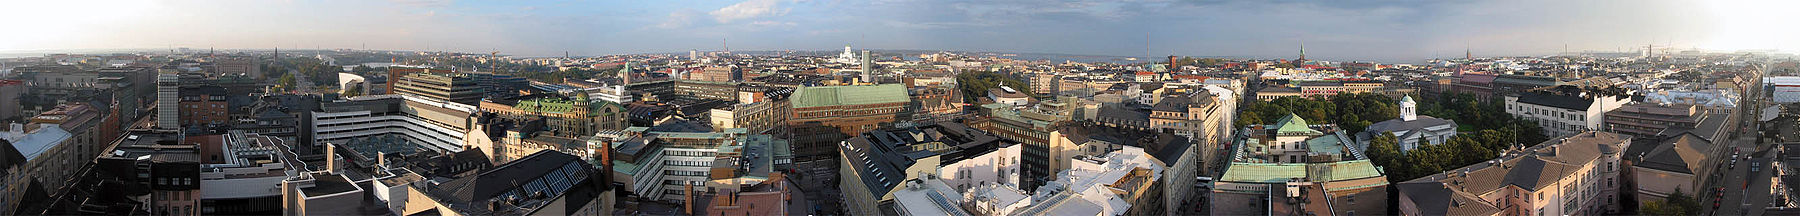 La ciudad de Helsinki tiene muchos edificios.